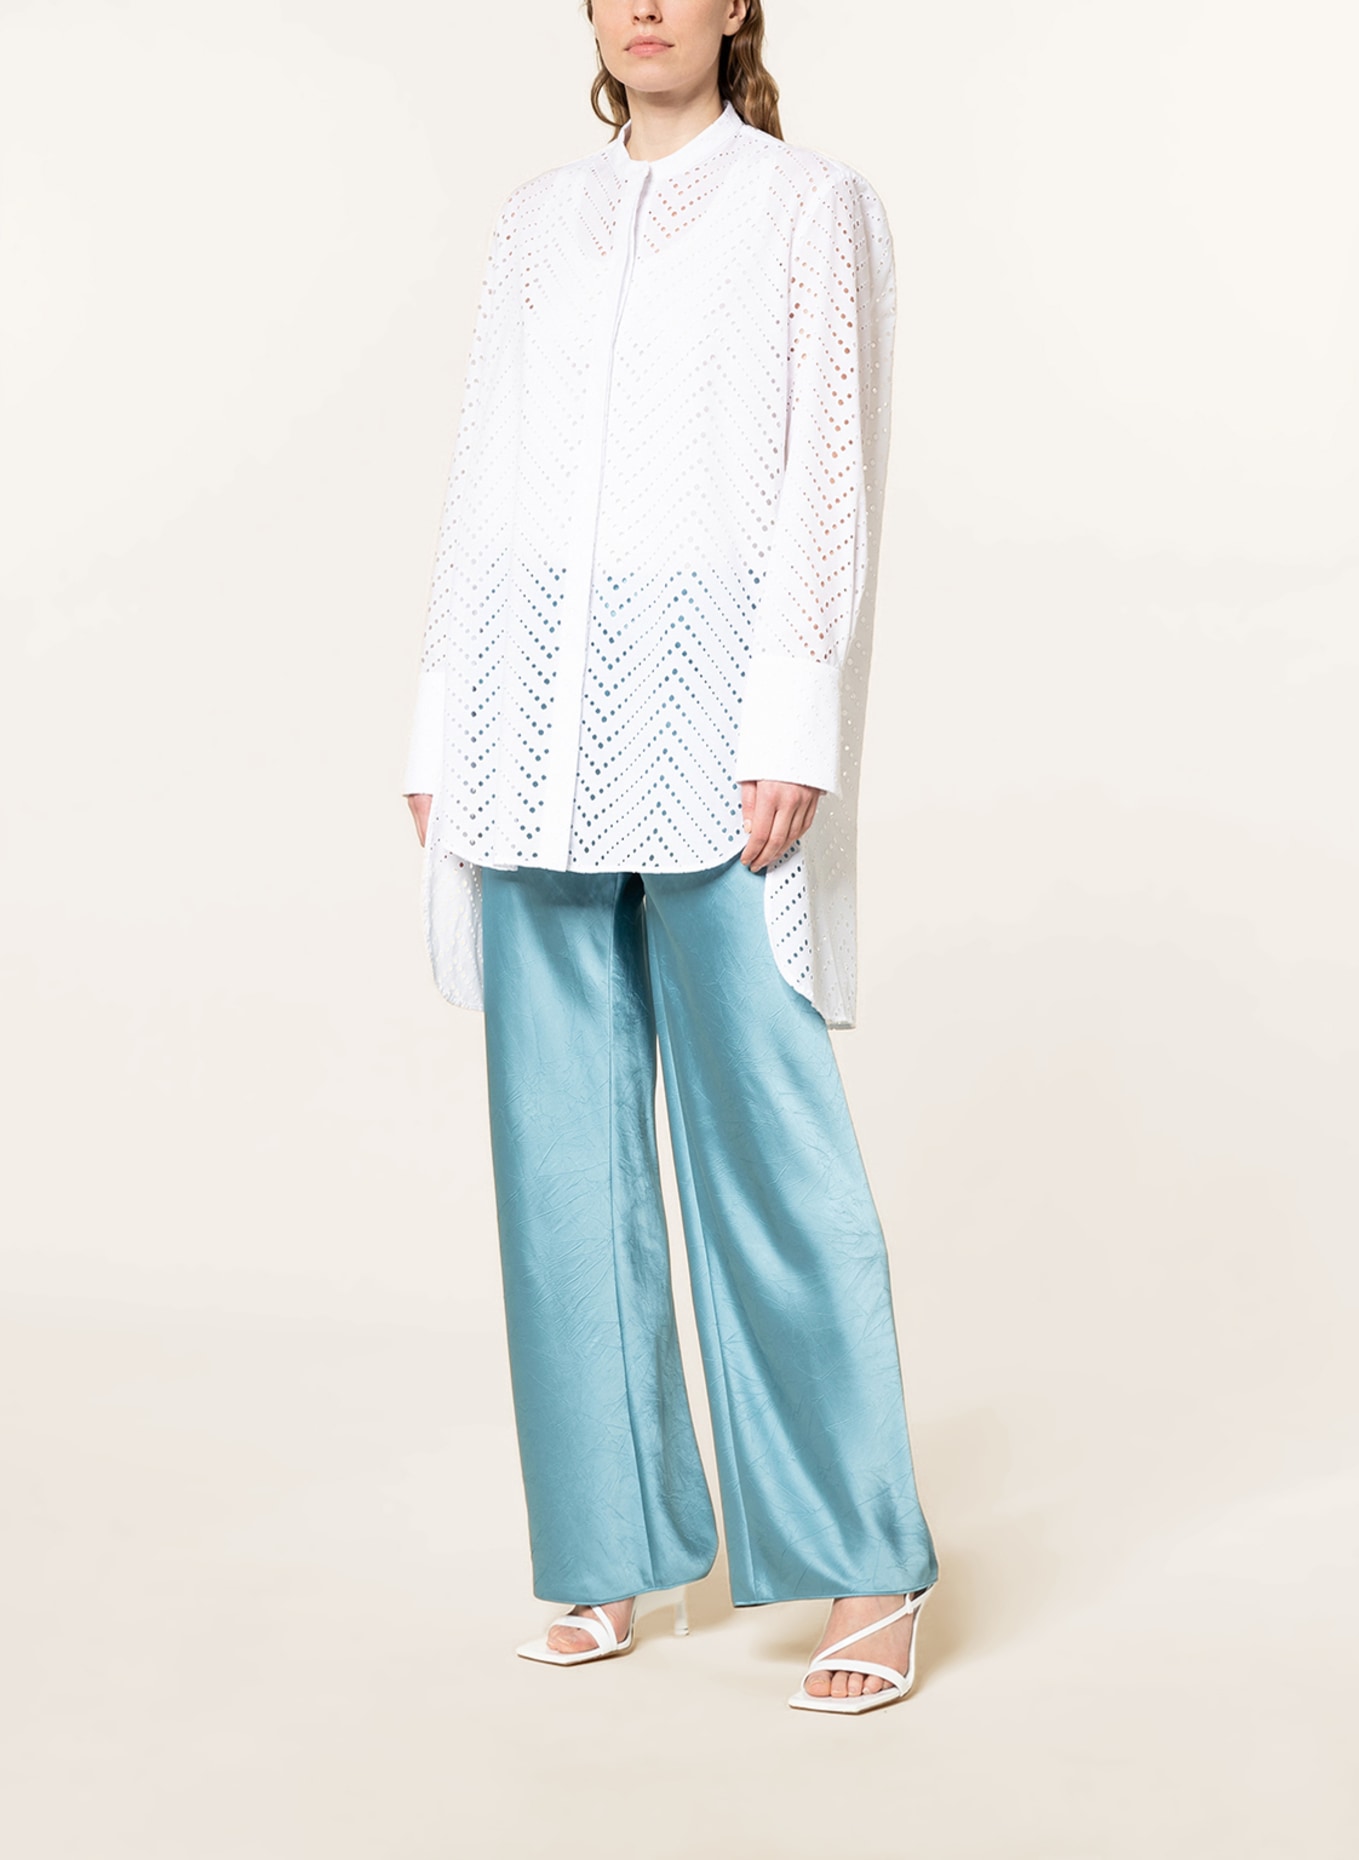 EVA MANN Bluse BERIT aus Lochspitze, Farbe: WEISS (Bild 2)